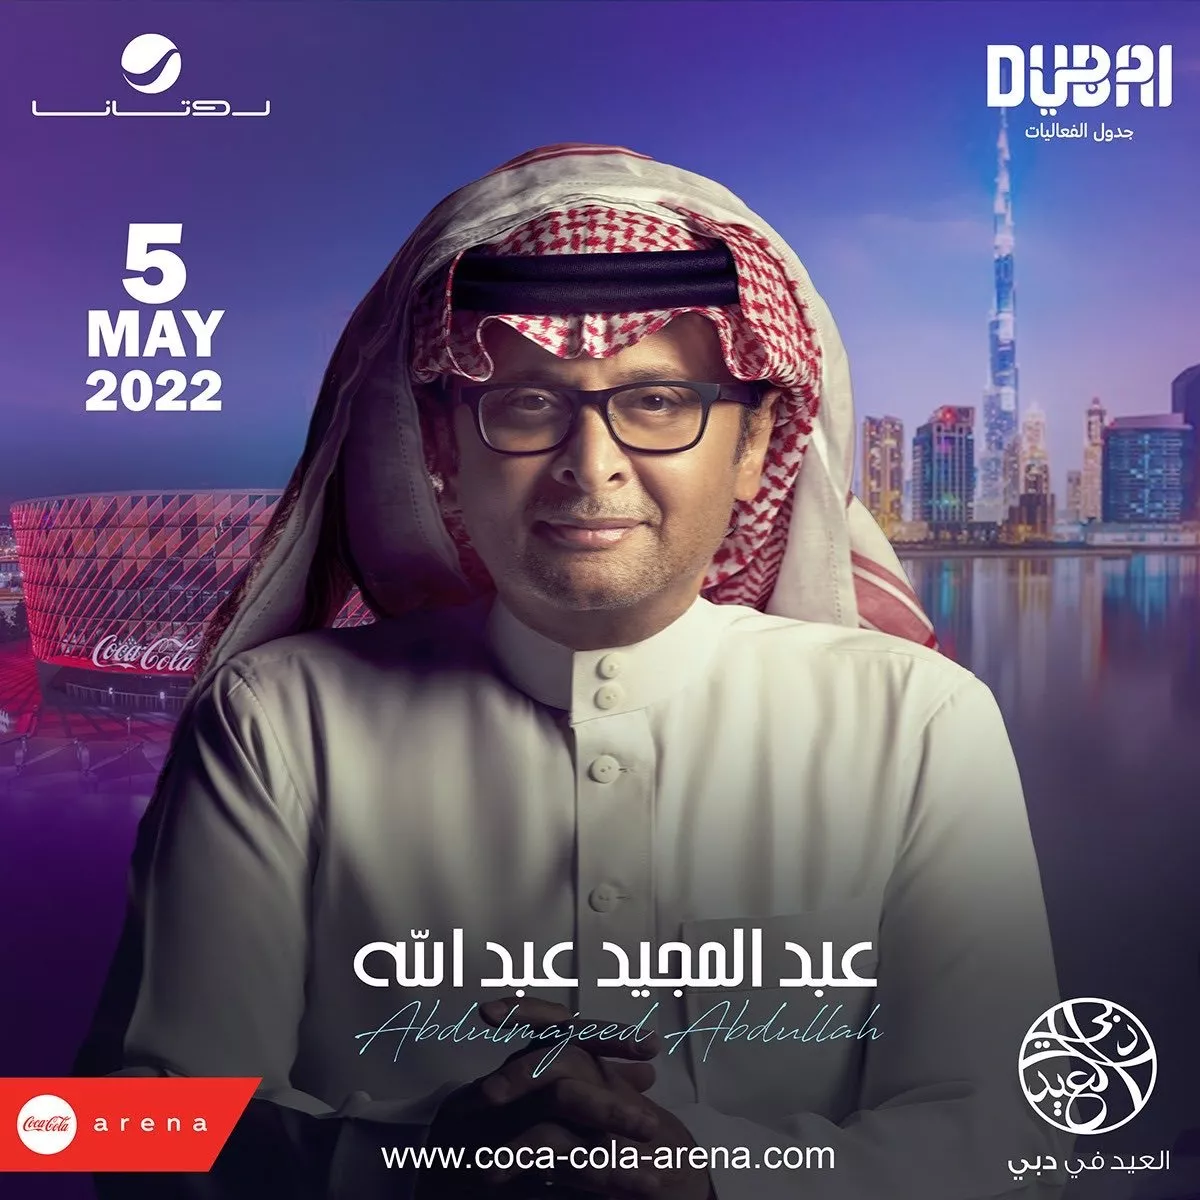 هذه هي مواعيد حفلات عيد الفطر 2022 في دبي